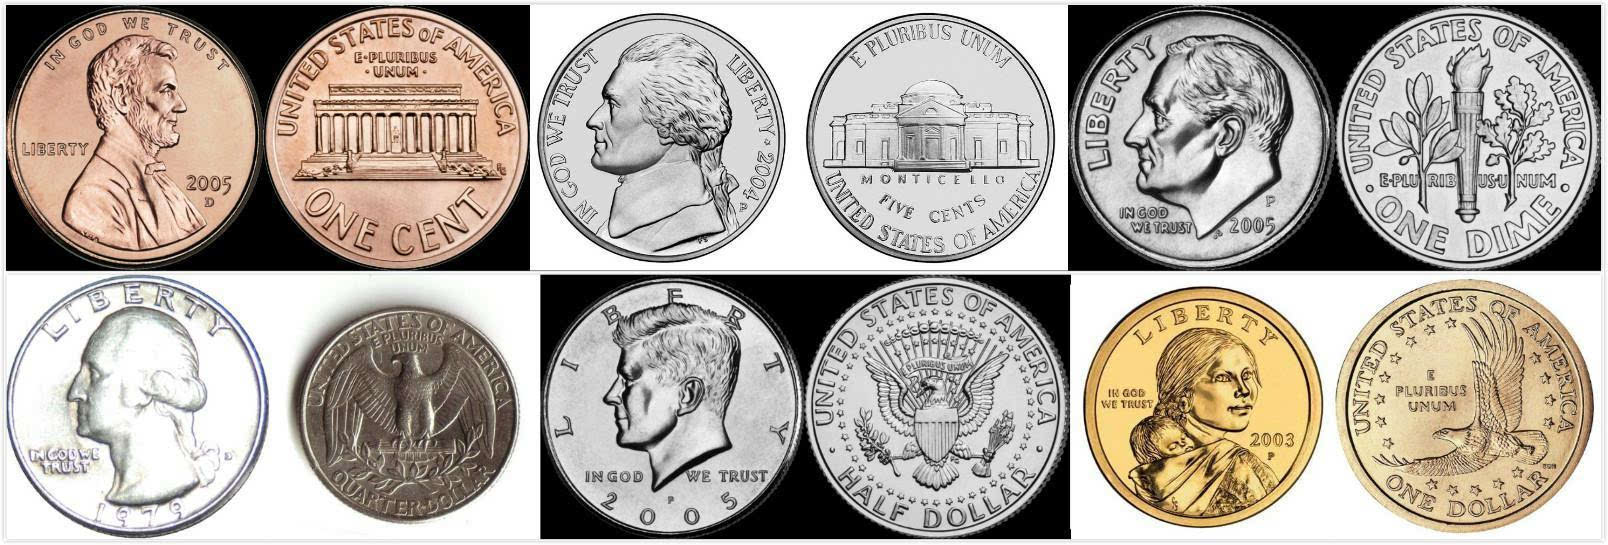 2016年最亏本生意:铸造1枚1美分硬币,成本达1.5美分-都市文化网